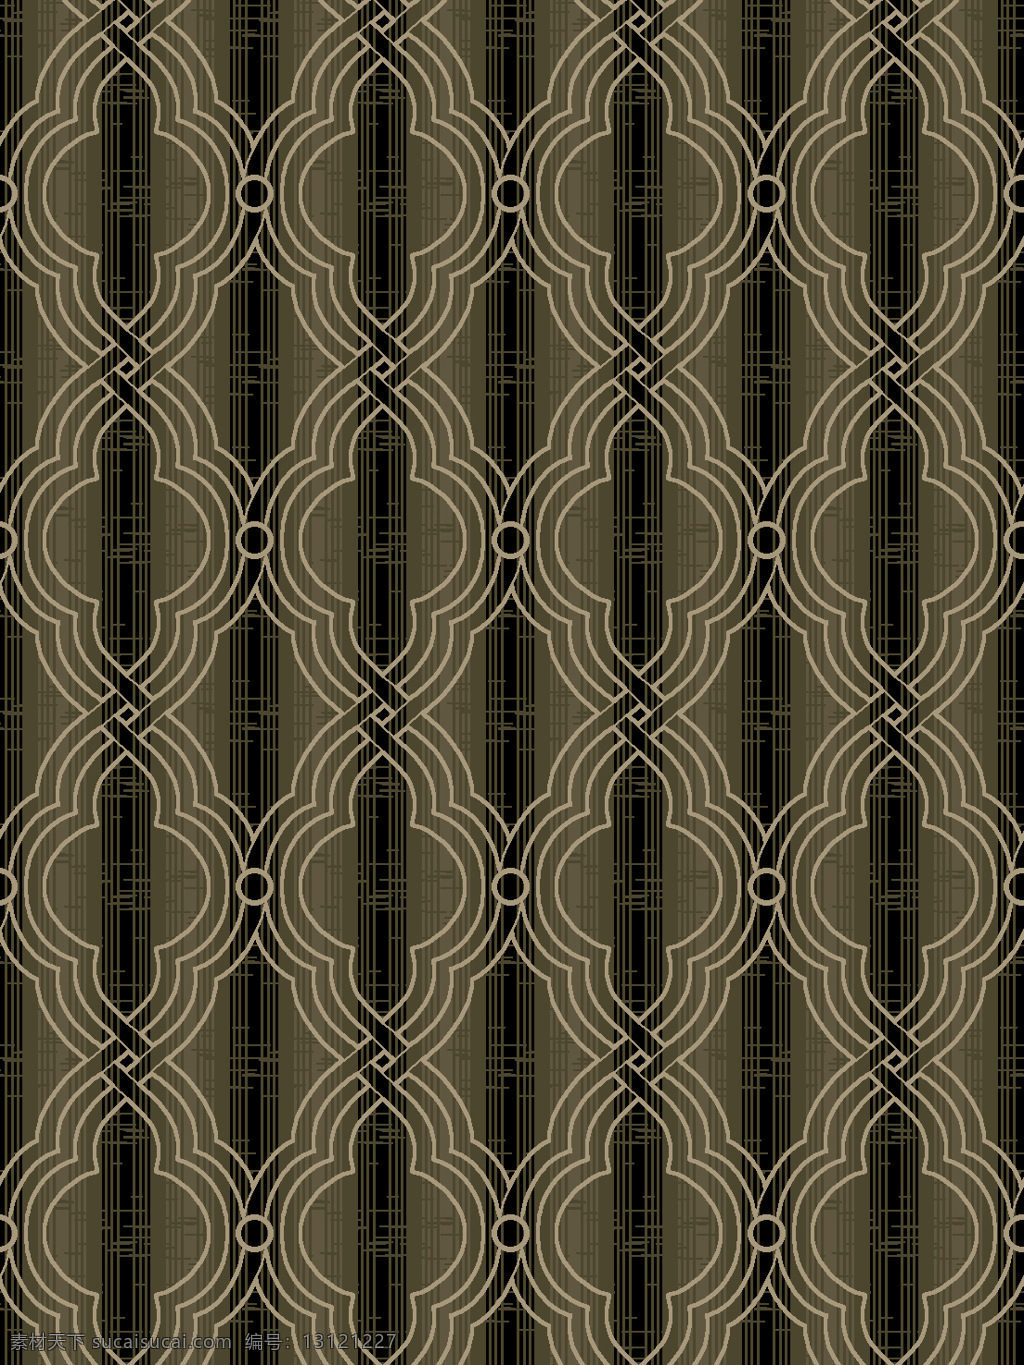 酒店 客房 地毯 图案 客房地毯 图案设计 五星级 设计图库 室内设计 环境设计